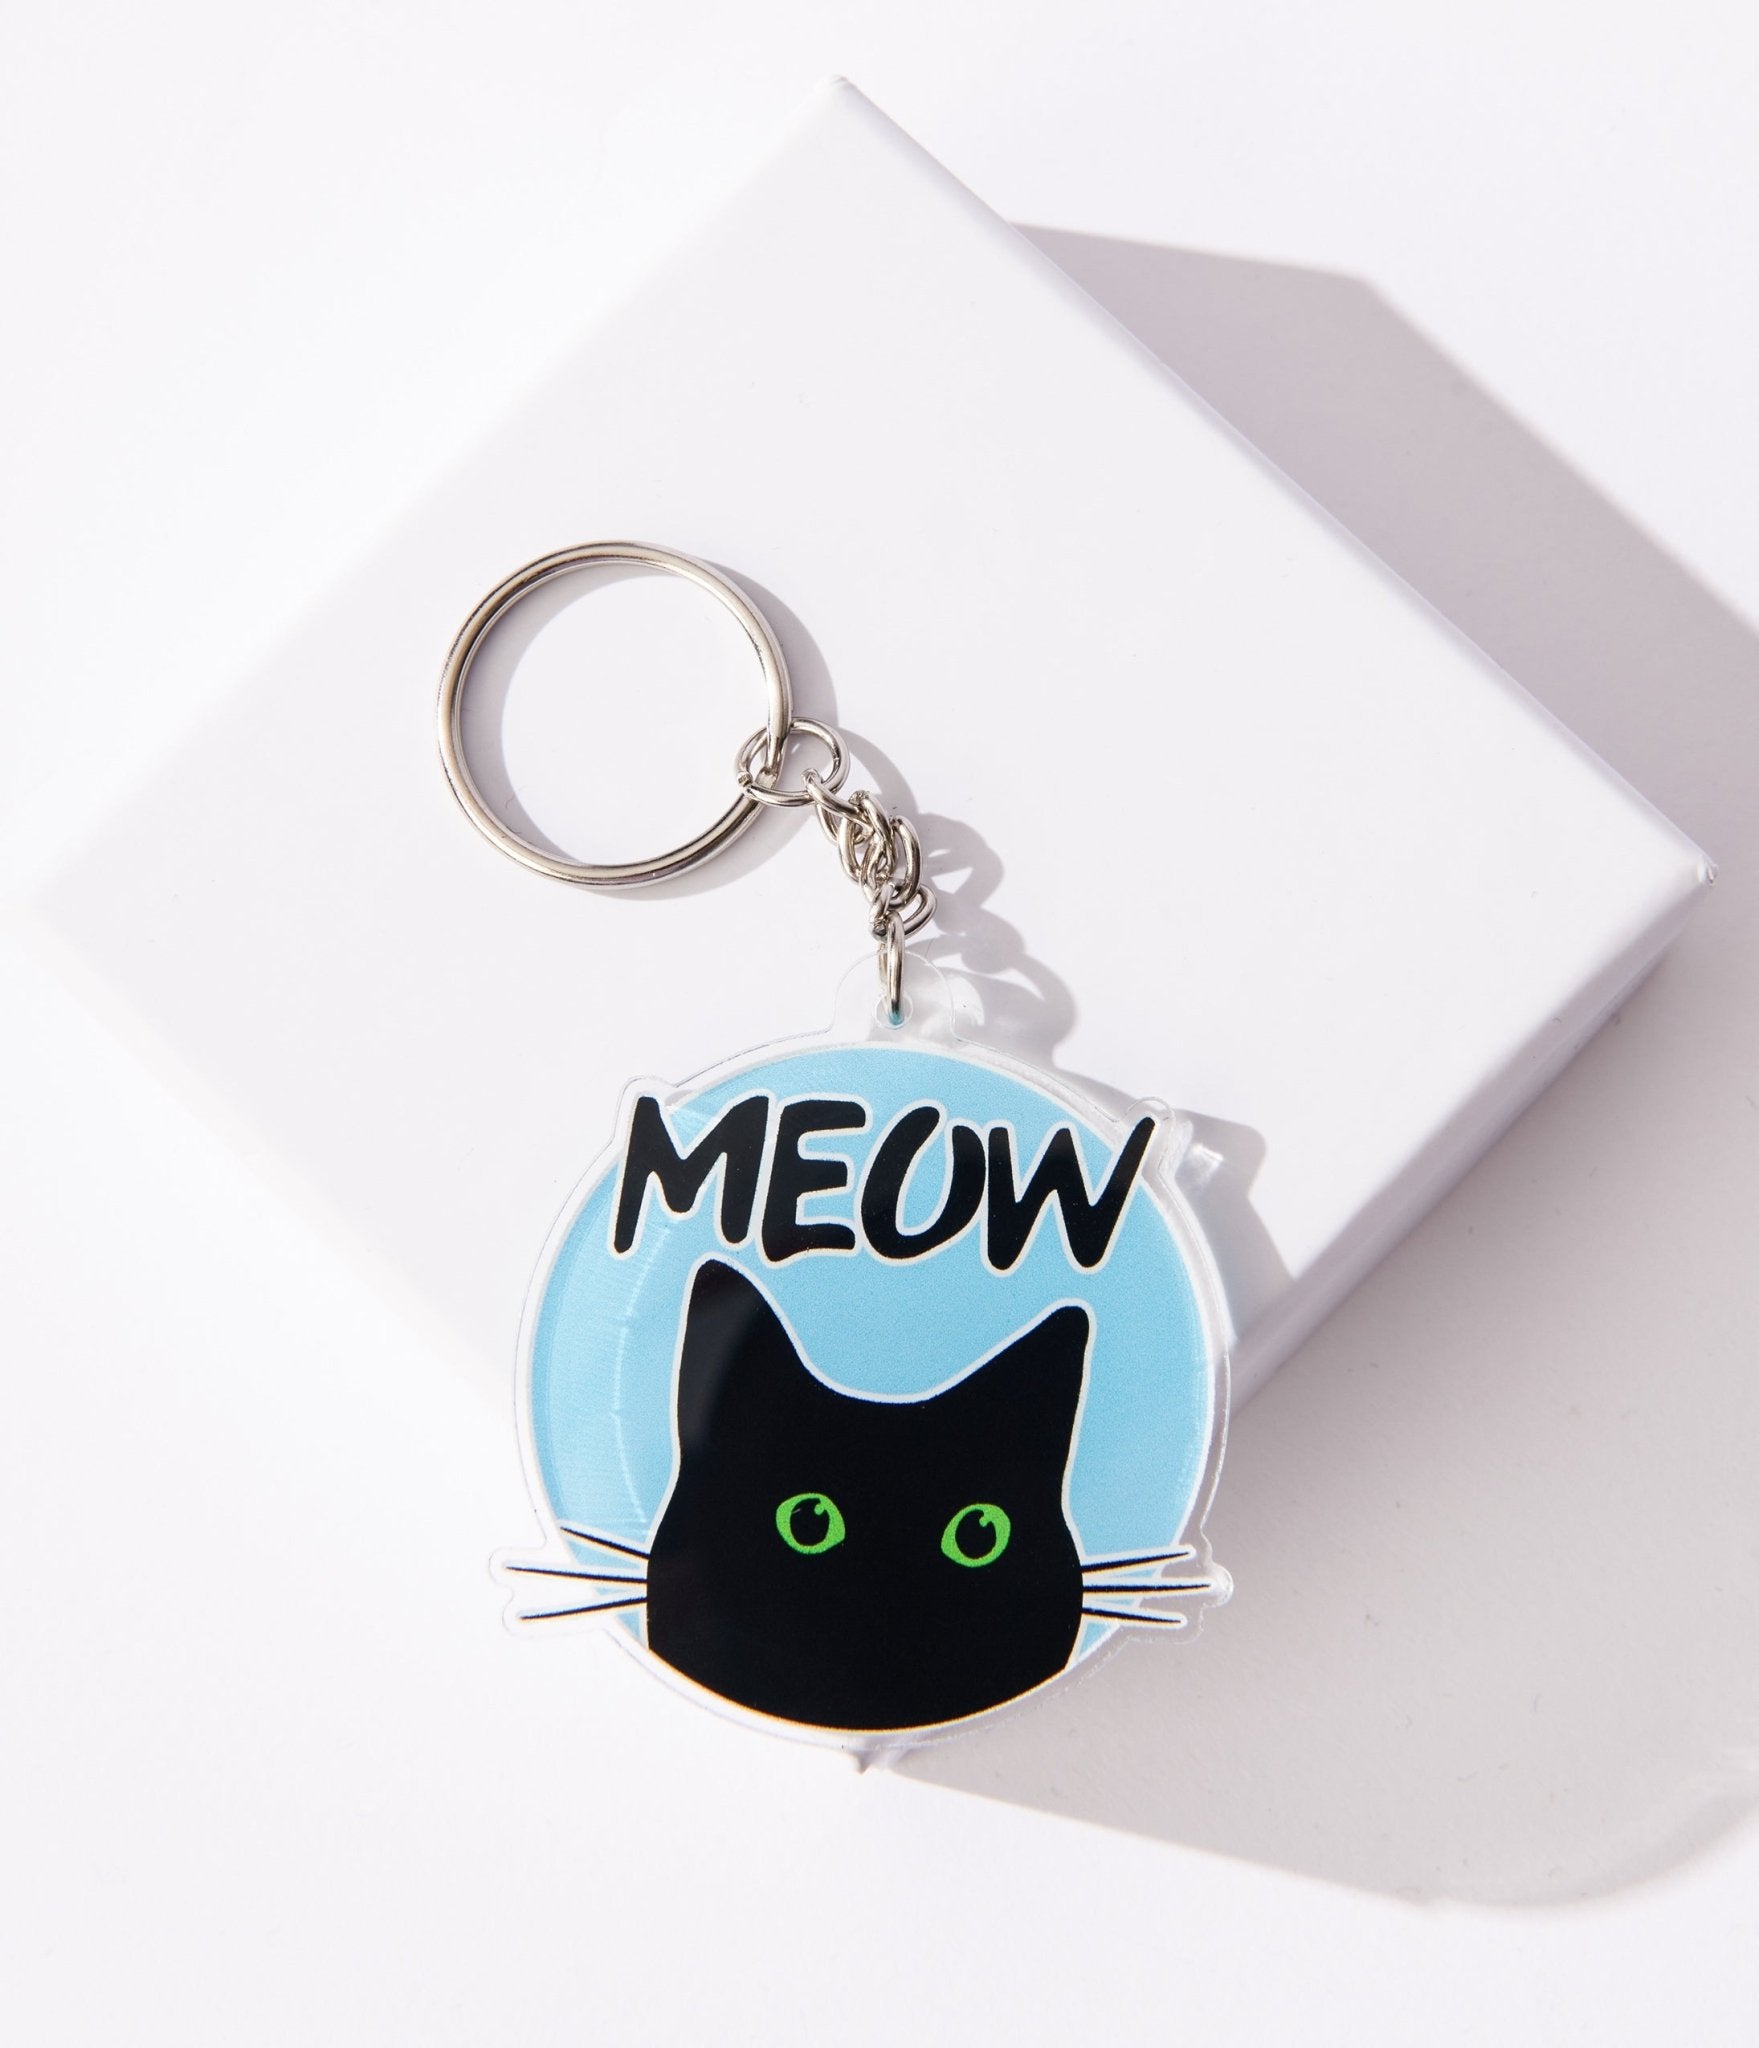 

Meow Black Cat Keychain